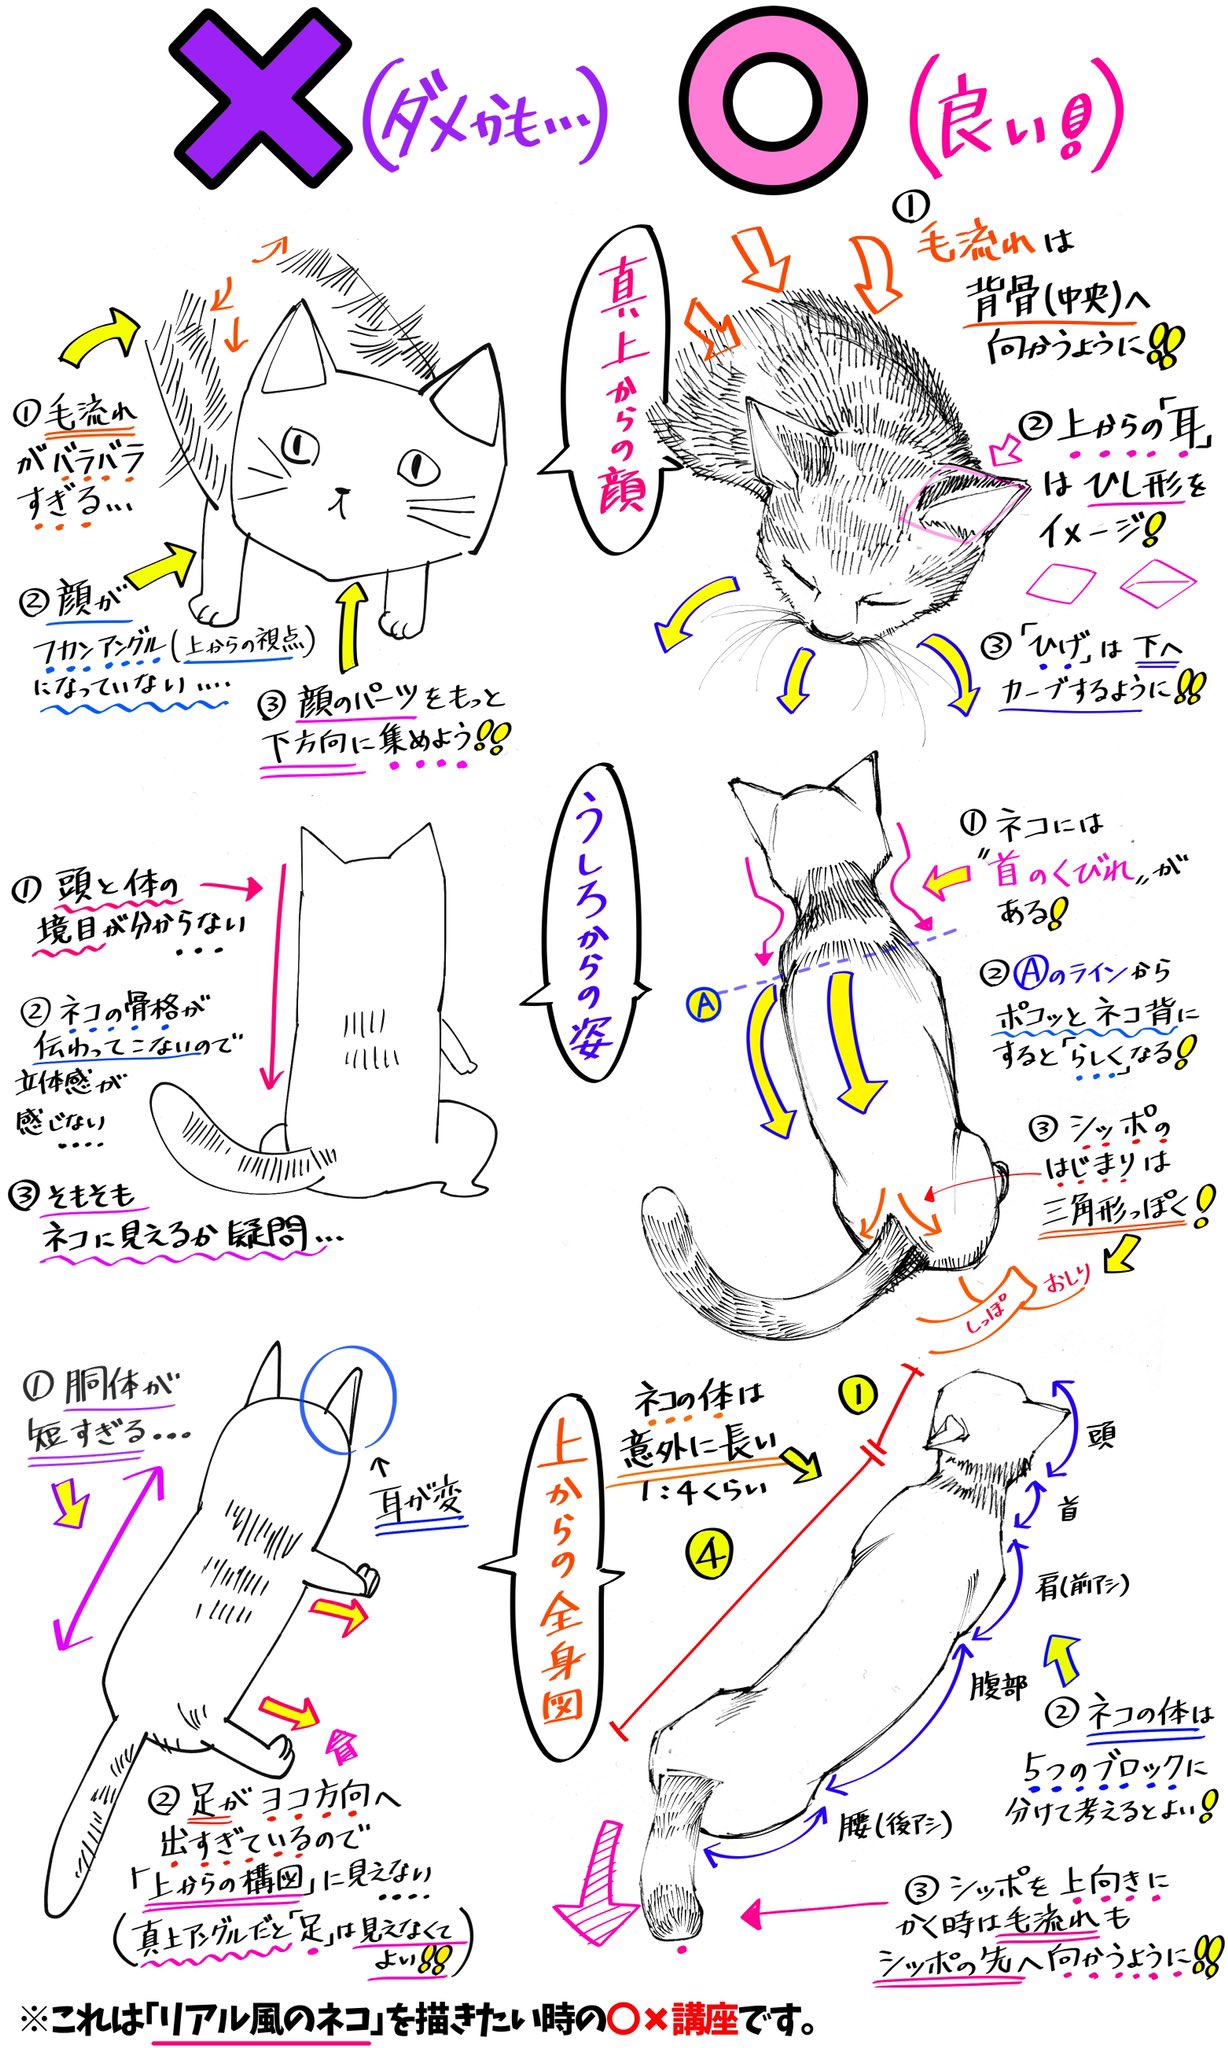 吉村拓也 イラスト講座 猫の描き方 リアルタッチの猫の絵 が上達する ダメかも と 良いかも T Co Dykwd3horl Twitter